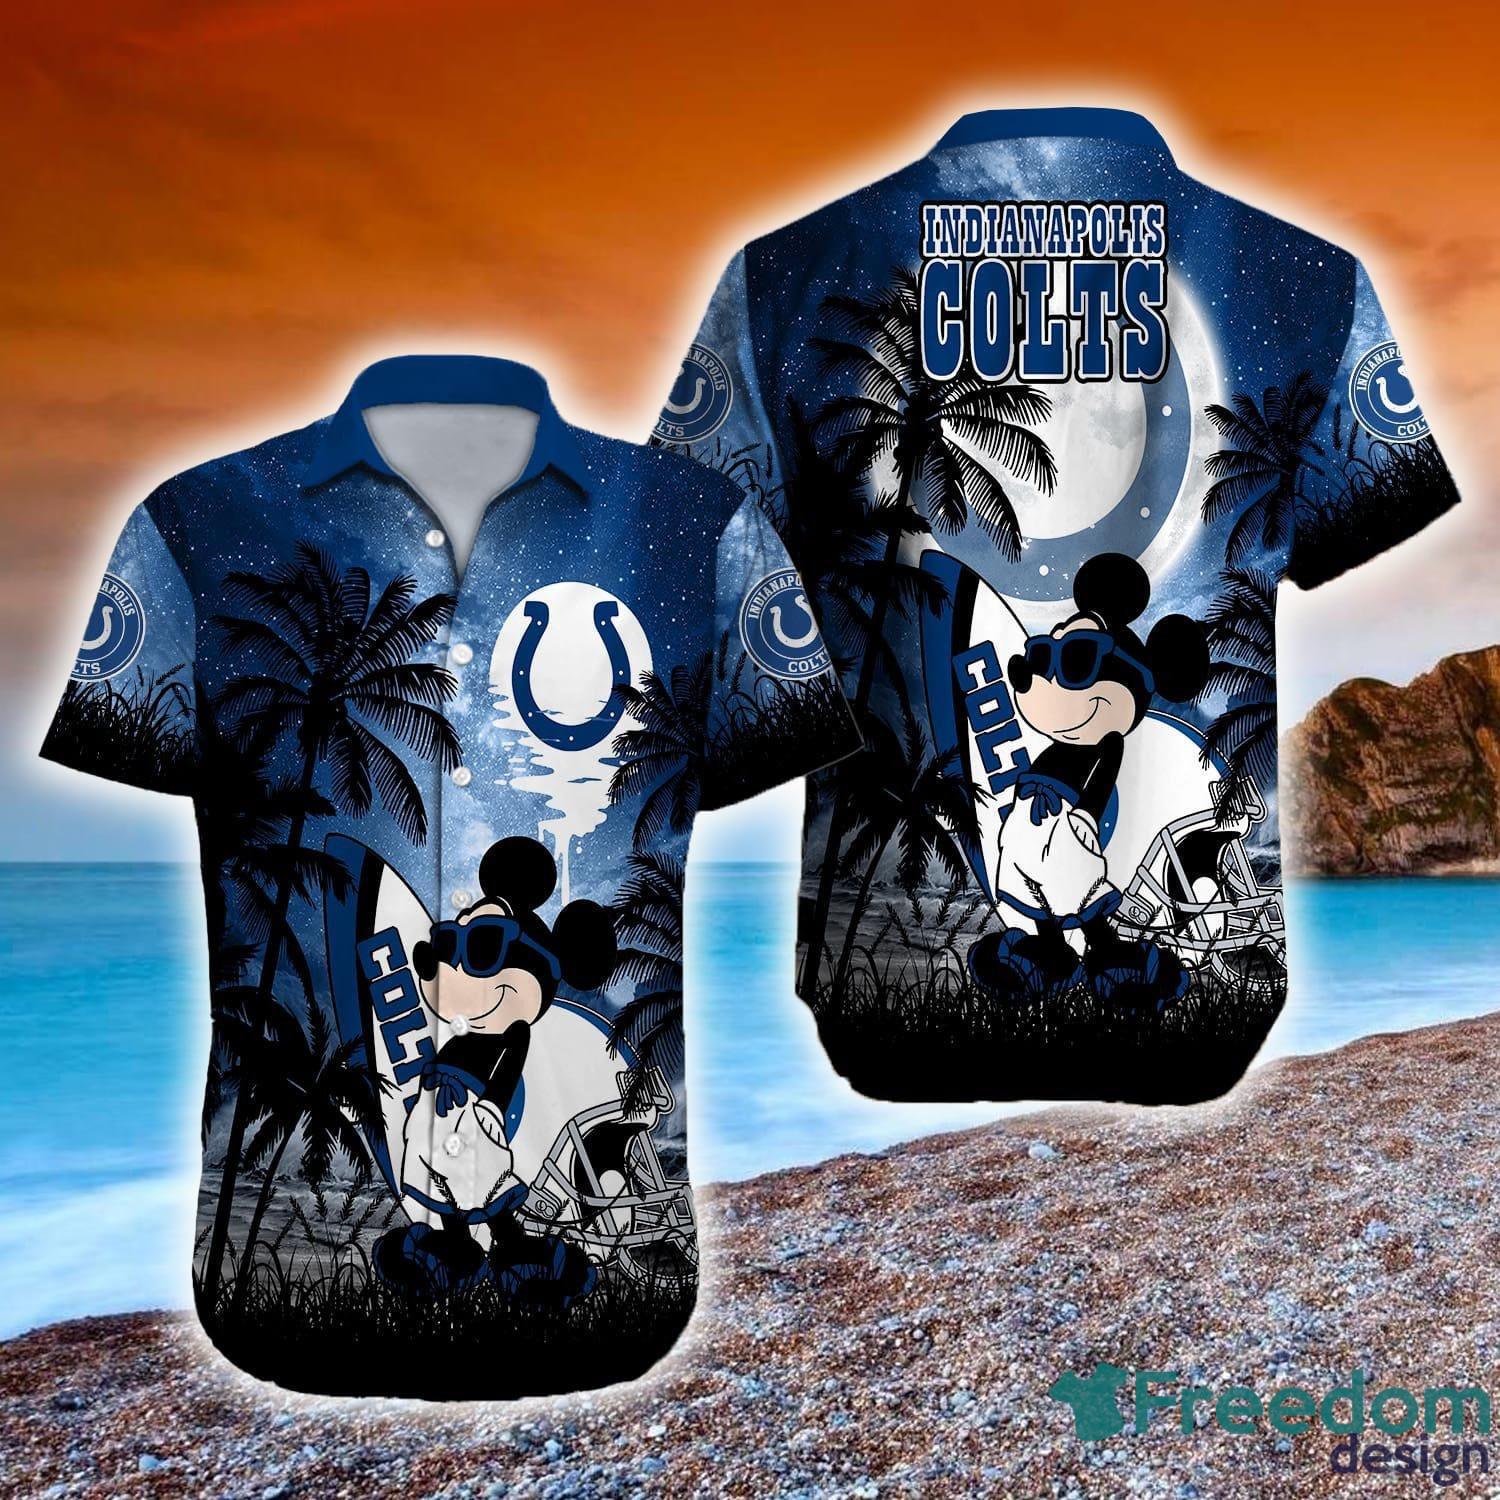 Indianapolis Colts Custom Name NFL Hawaiian Shirt And Shorts Gift